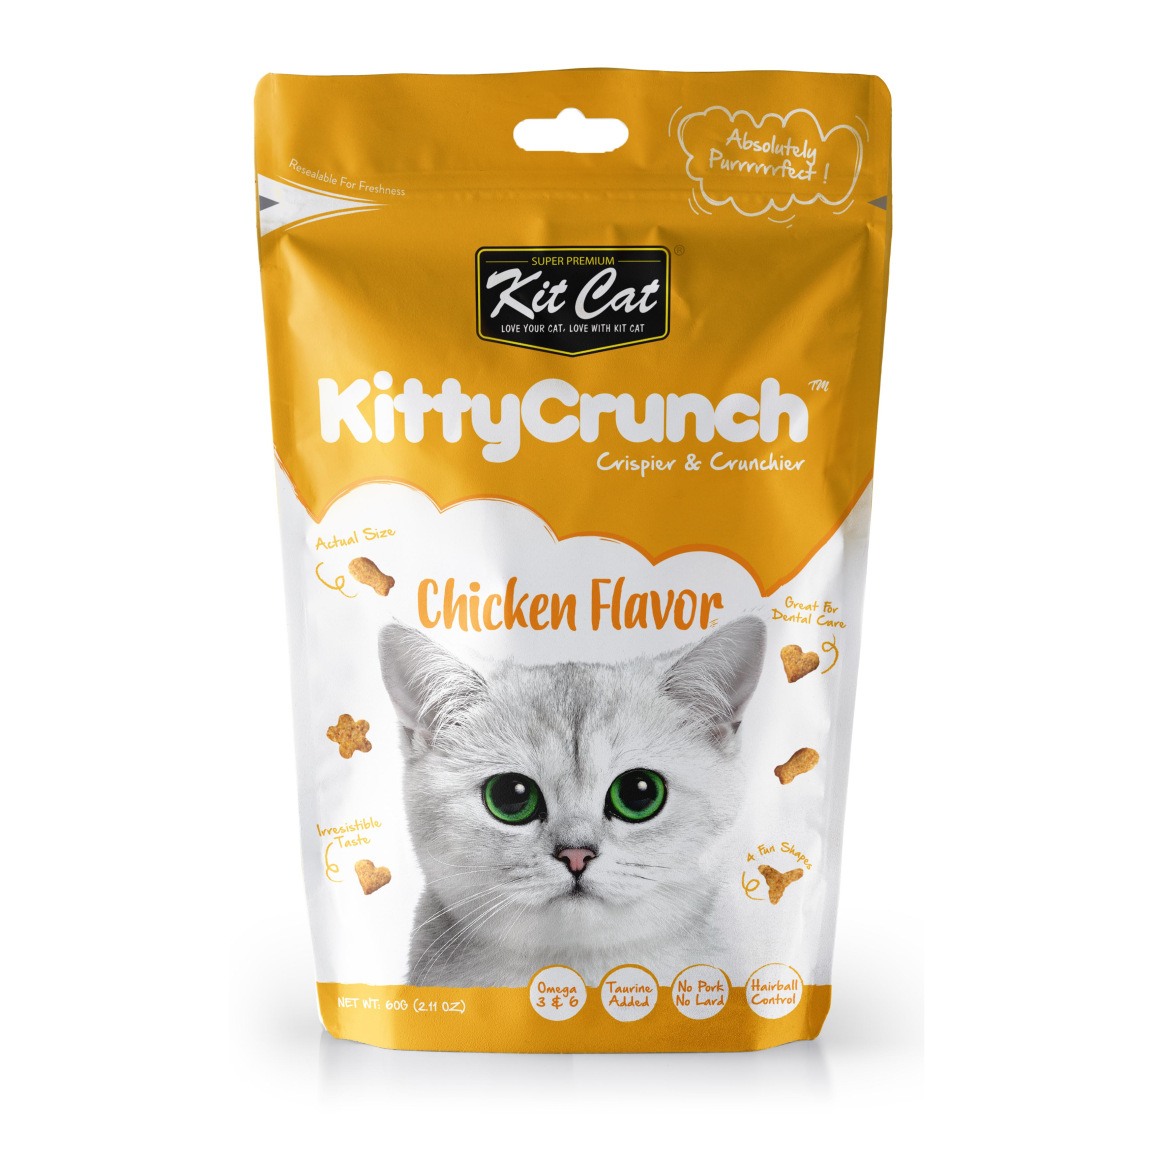 Kit Cat KittyCrunch - Chicken Flavour